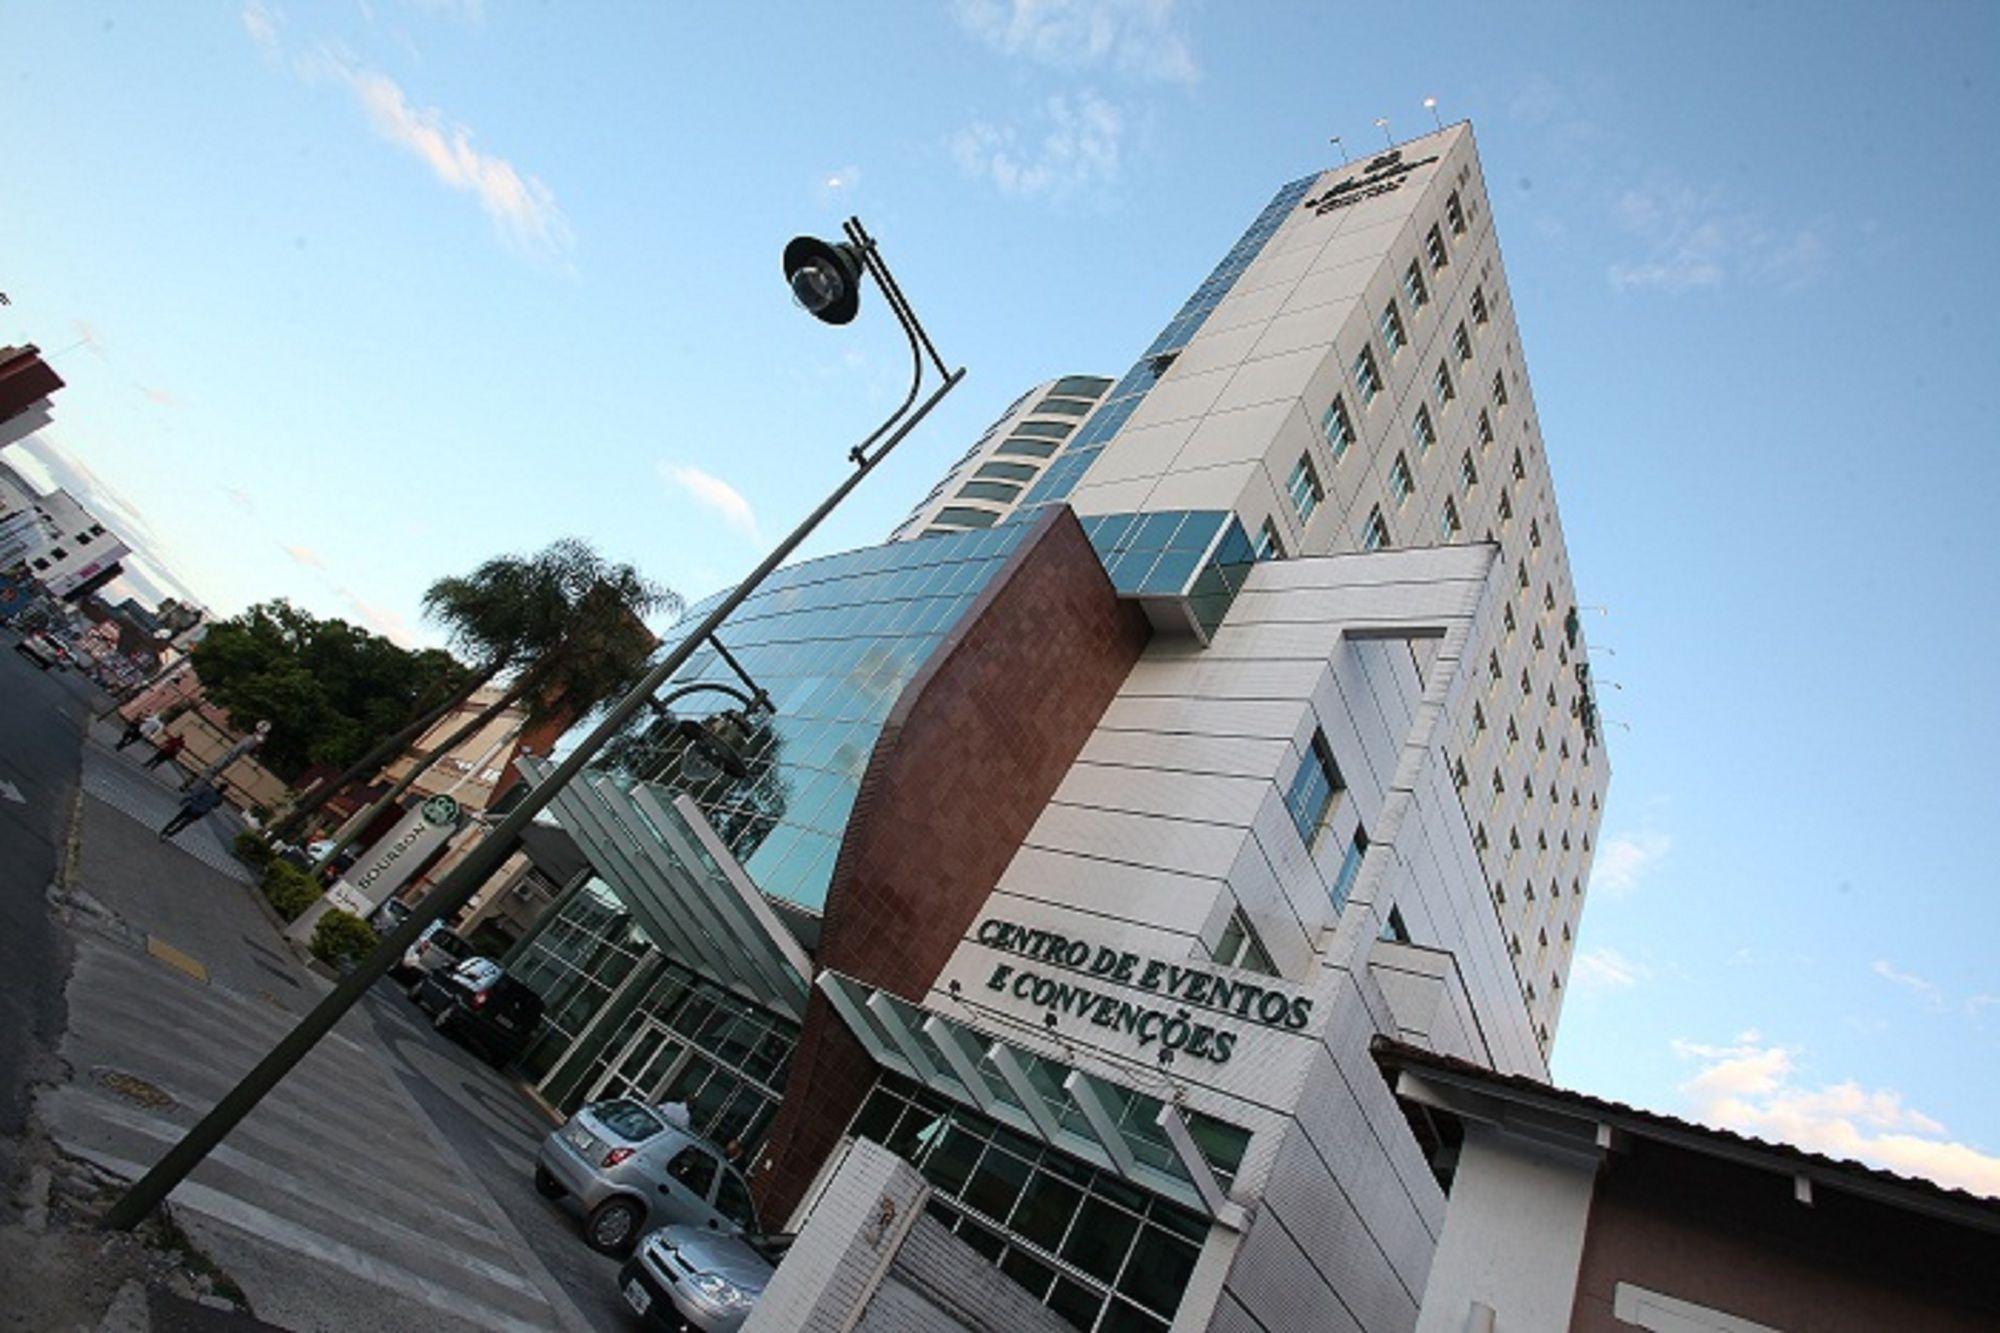 Vista da fachada Bourbon Joinville Convention Hotel